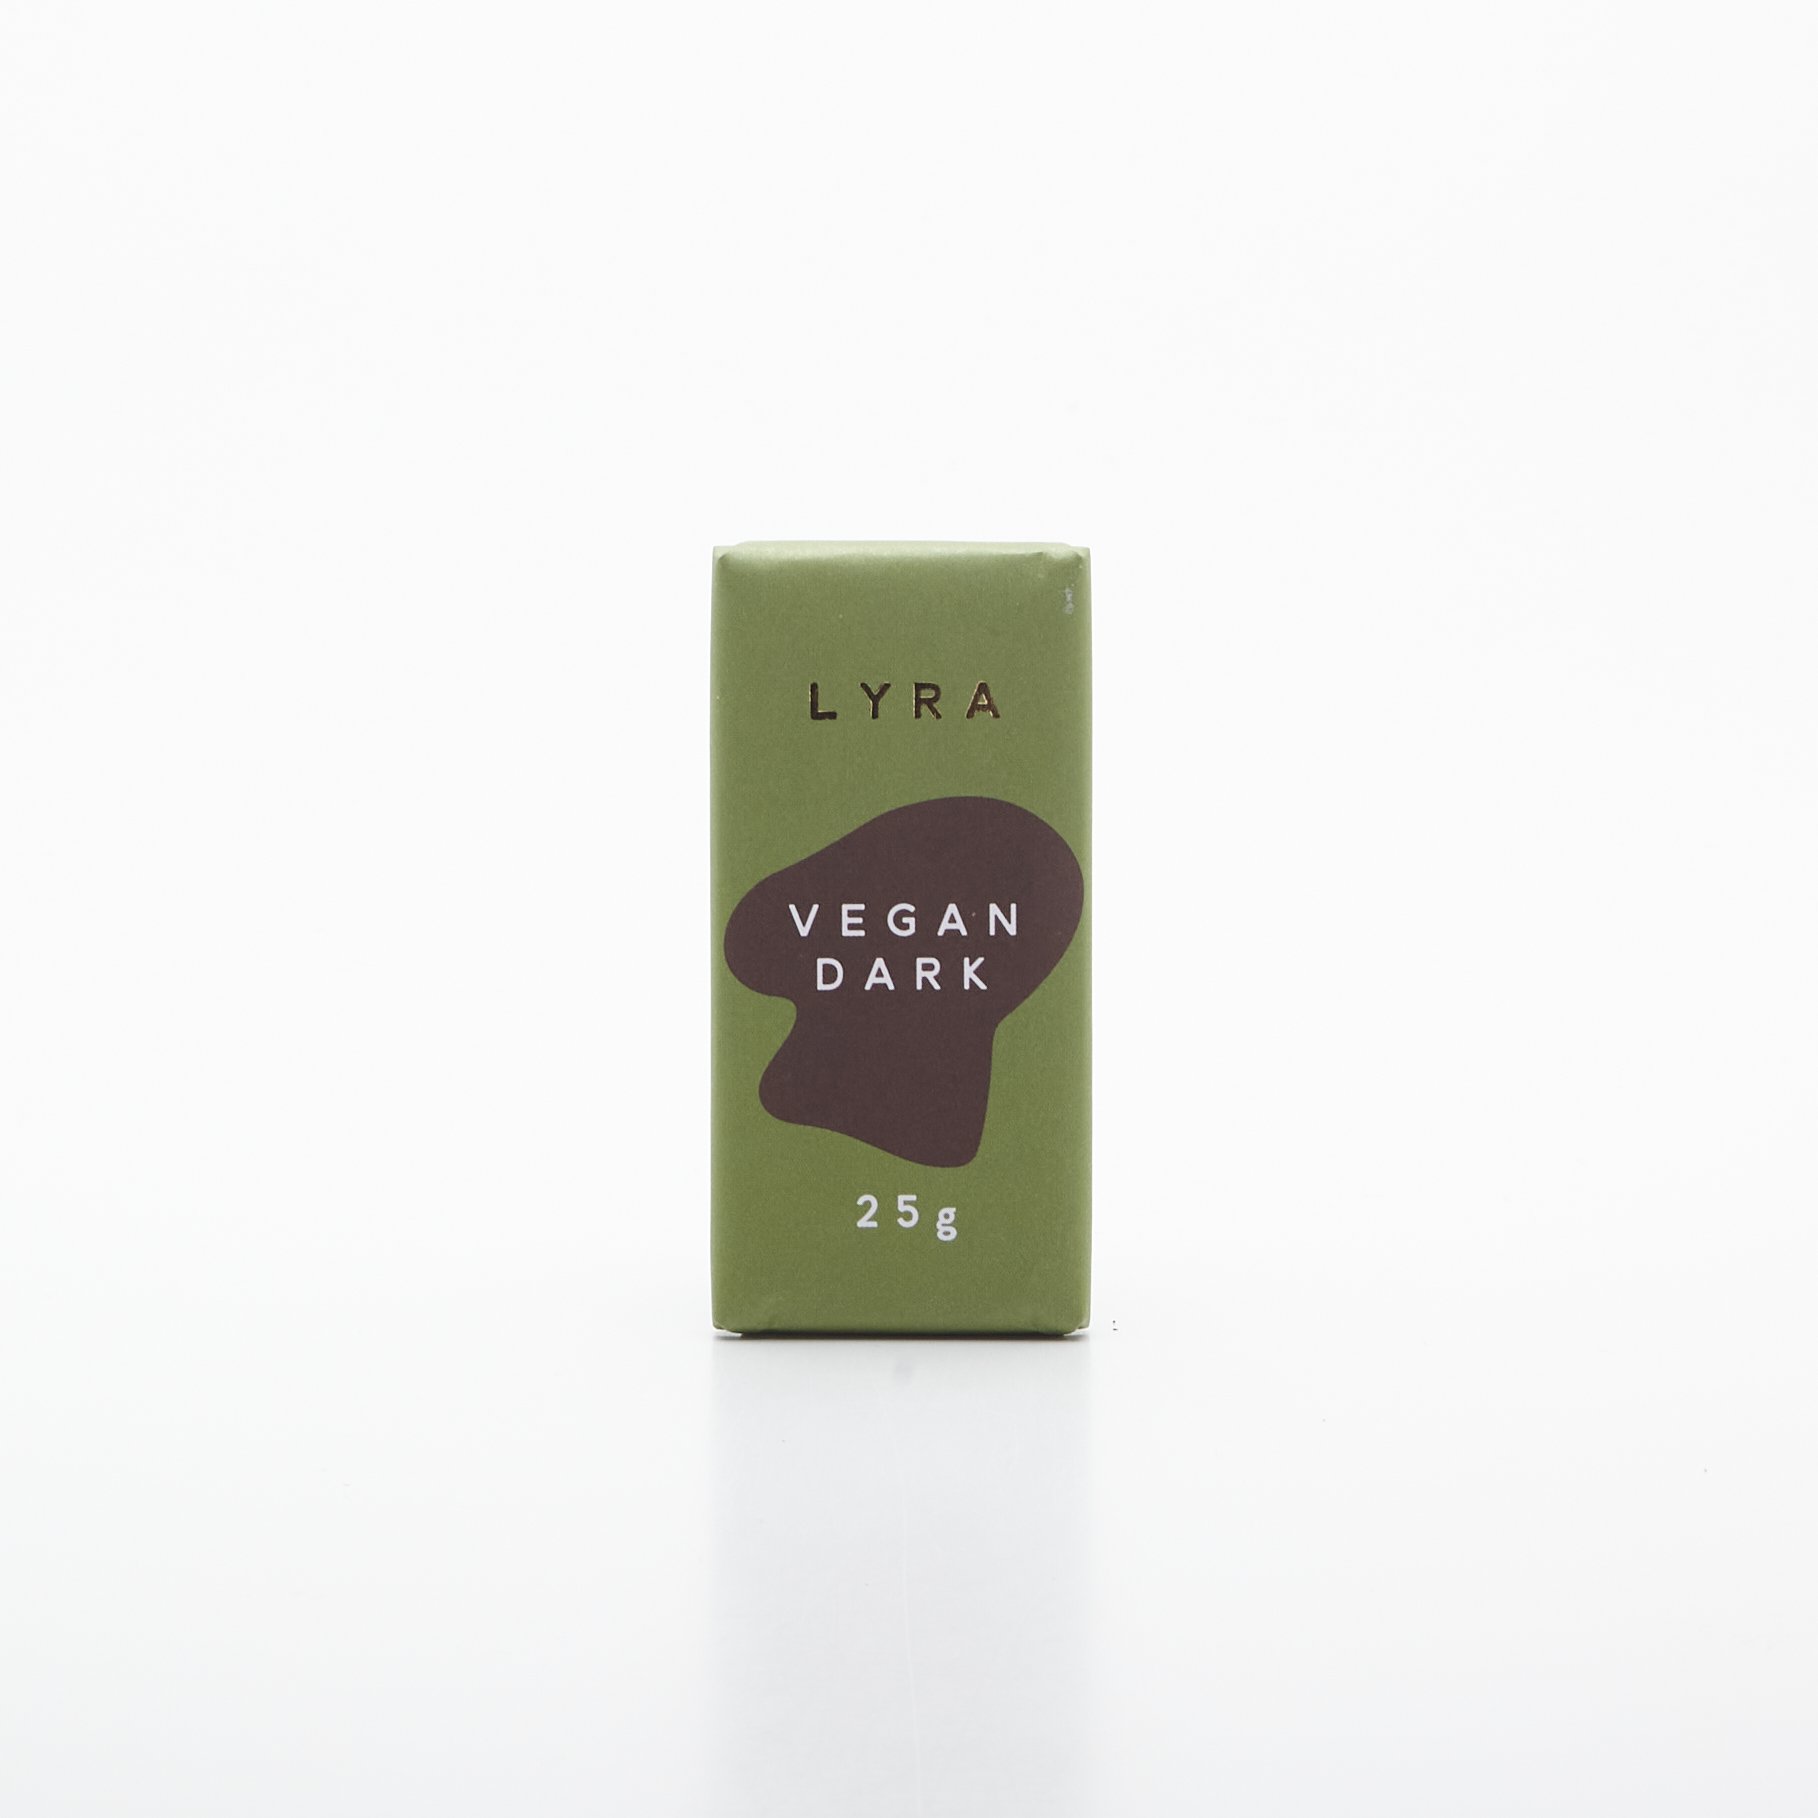 Lyra Vegan Dark 25g